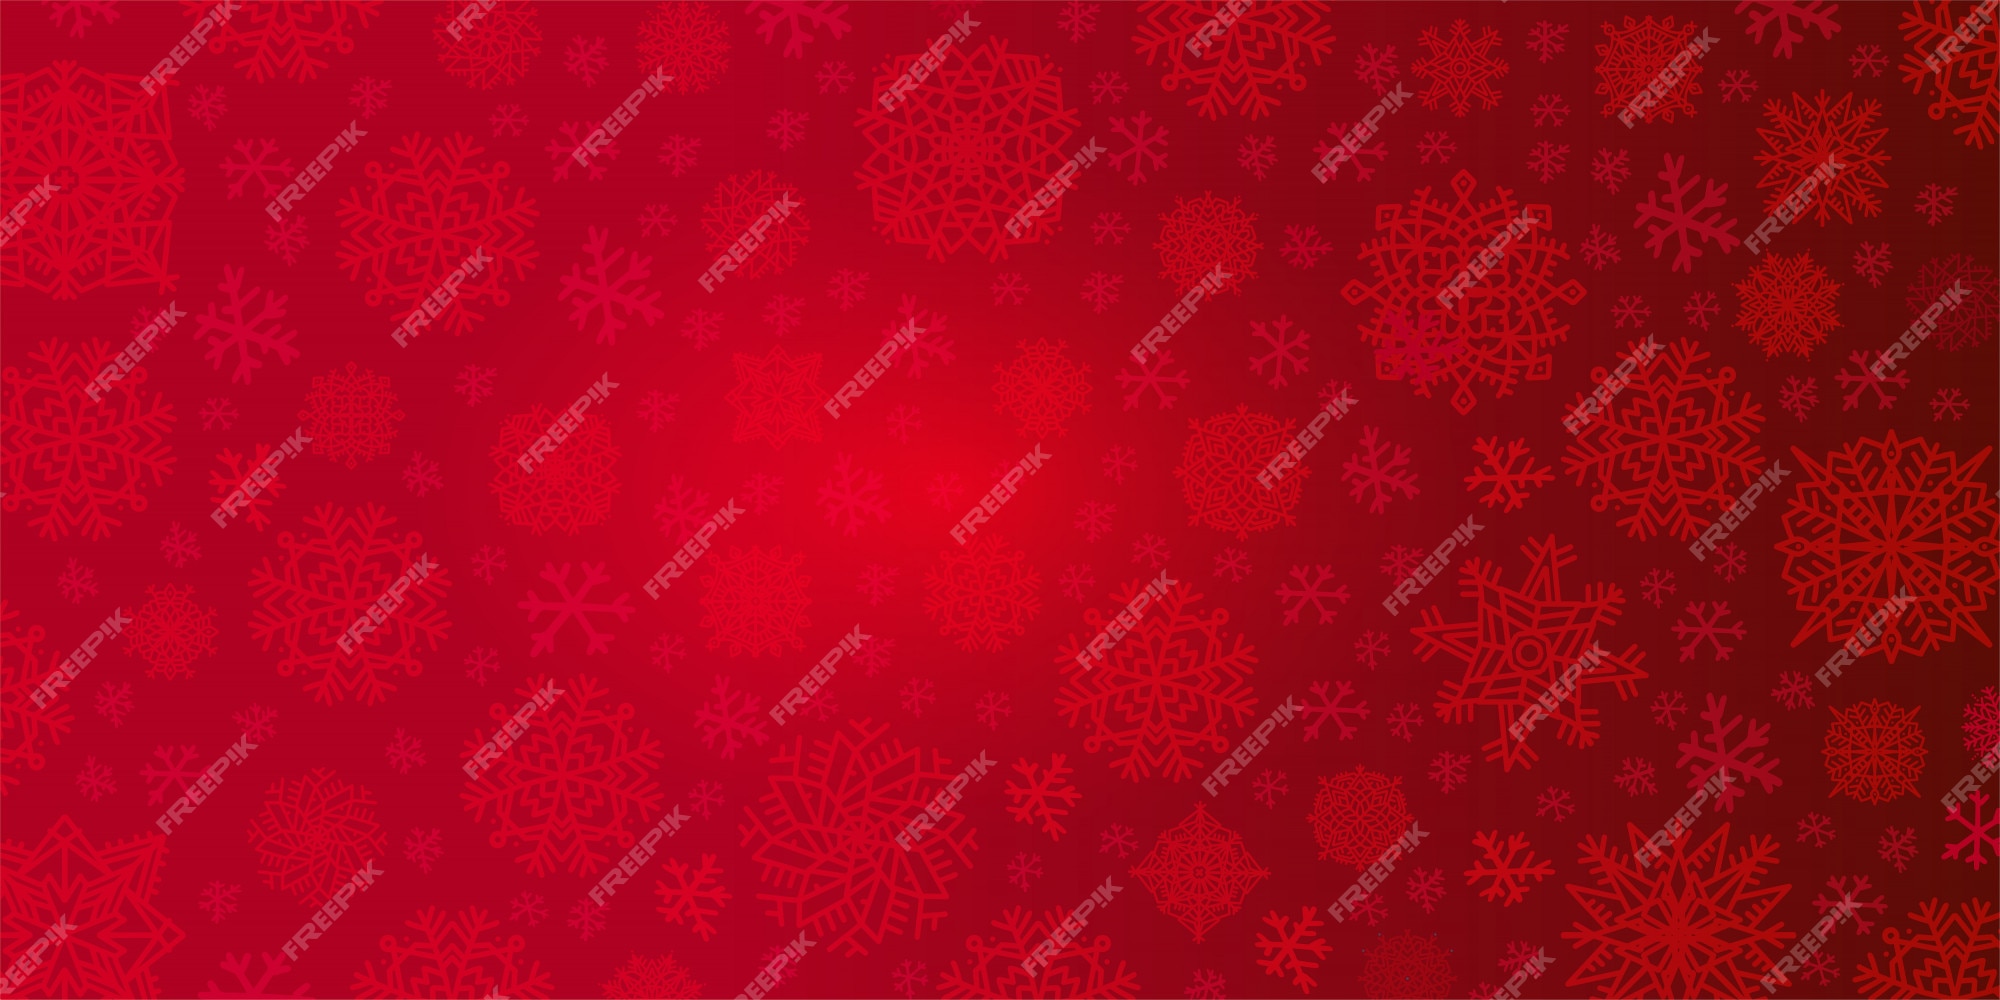 Tết đến rồi, bạn đã chuẩn bị cho ngôi nhà của mình một hình nền Giáng sinh đẹp chưa? Với màu đỏ tươi trẻ, hình nền Giáng sinh này sẽ làm cho không gian sống của bạn thêm ấm áp và đầy hứng khởi. Tải ngay và hoàn thành không gian Tết của bạn ngay hôm nay nhé!